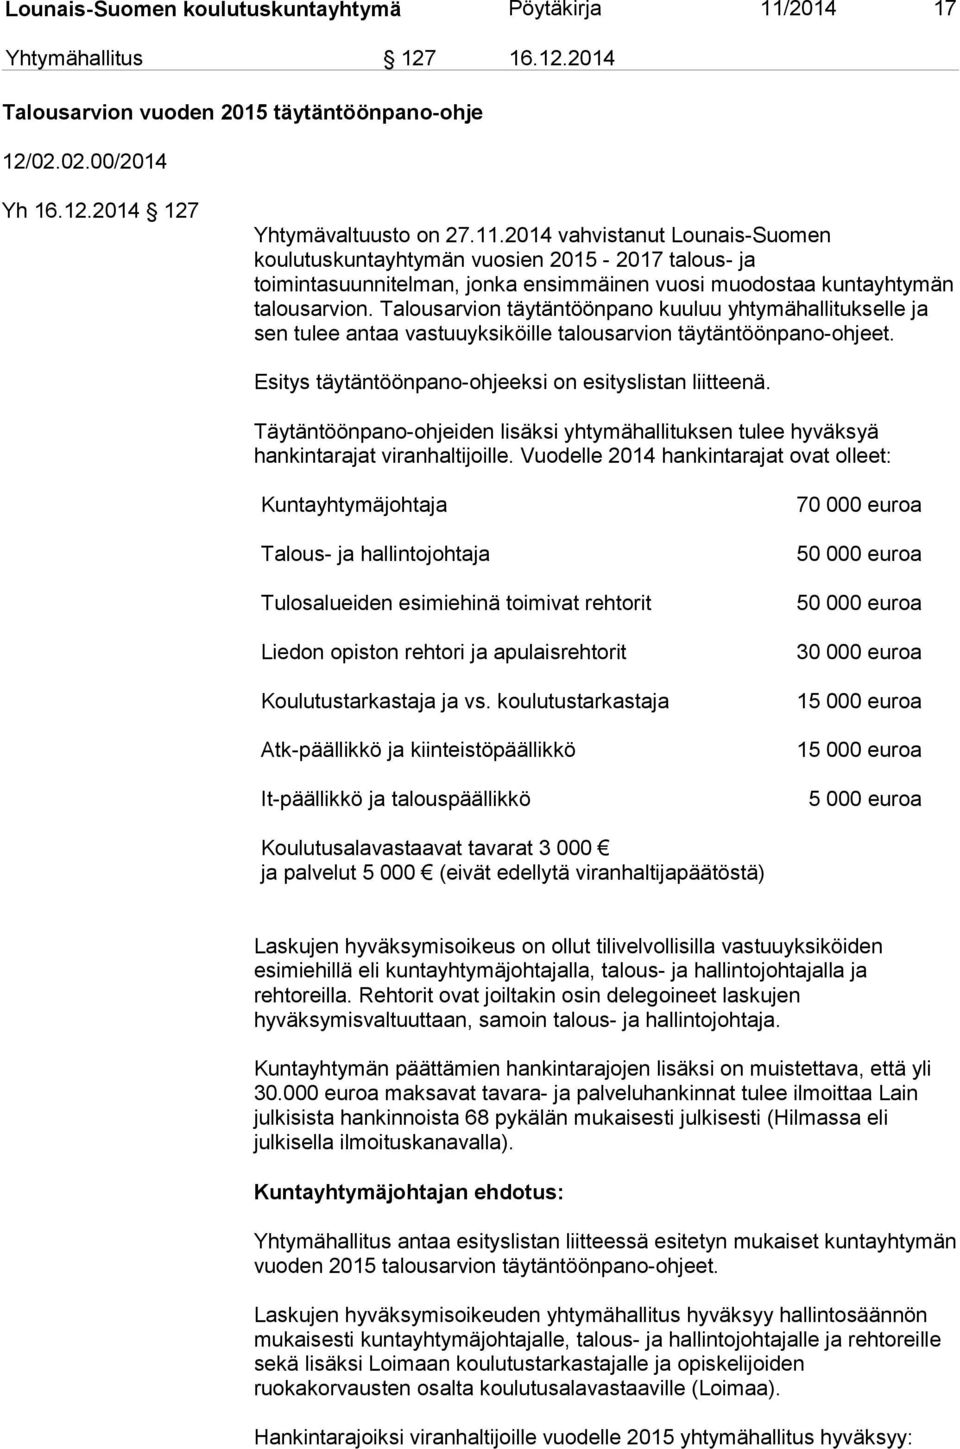 2014 vahvistanut Lounais-Suomen koulutuskuntayhtymän vuosien 2015-2017 talous- ja toimintasuunnitelman, jonka ensimmäinen vuosi muodostaa kuntayhtymän talousarvion.